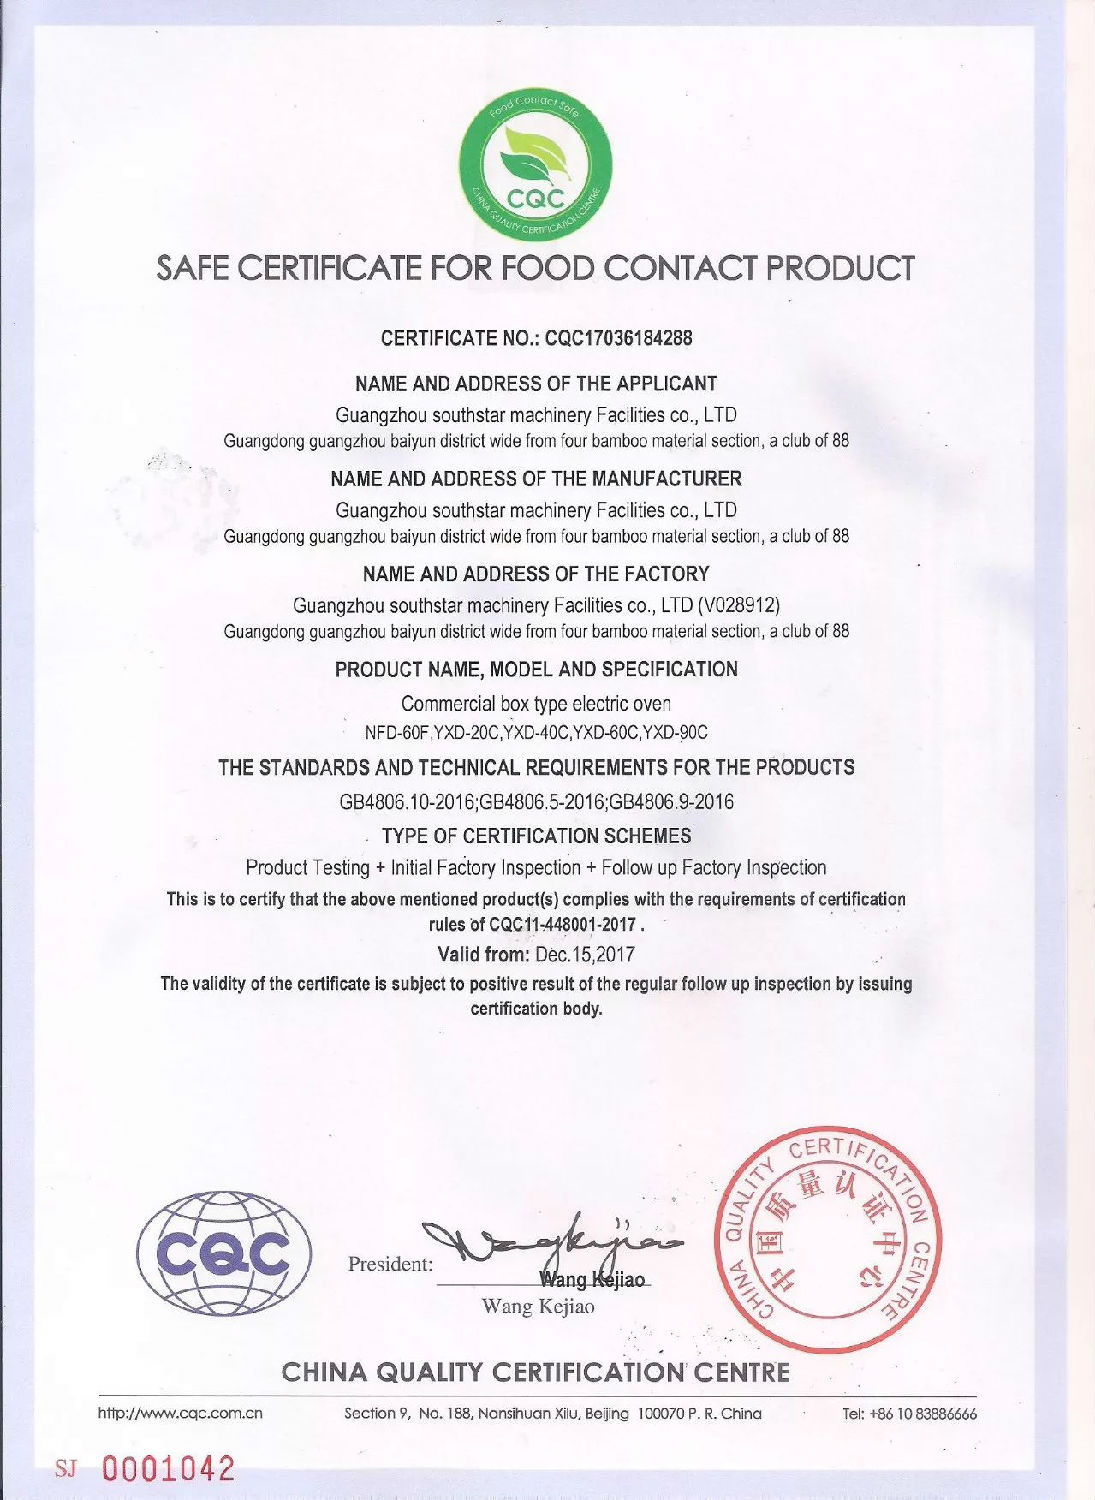 赛思达荣获CQC食品接触产品安全认证